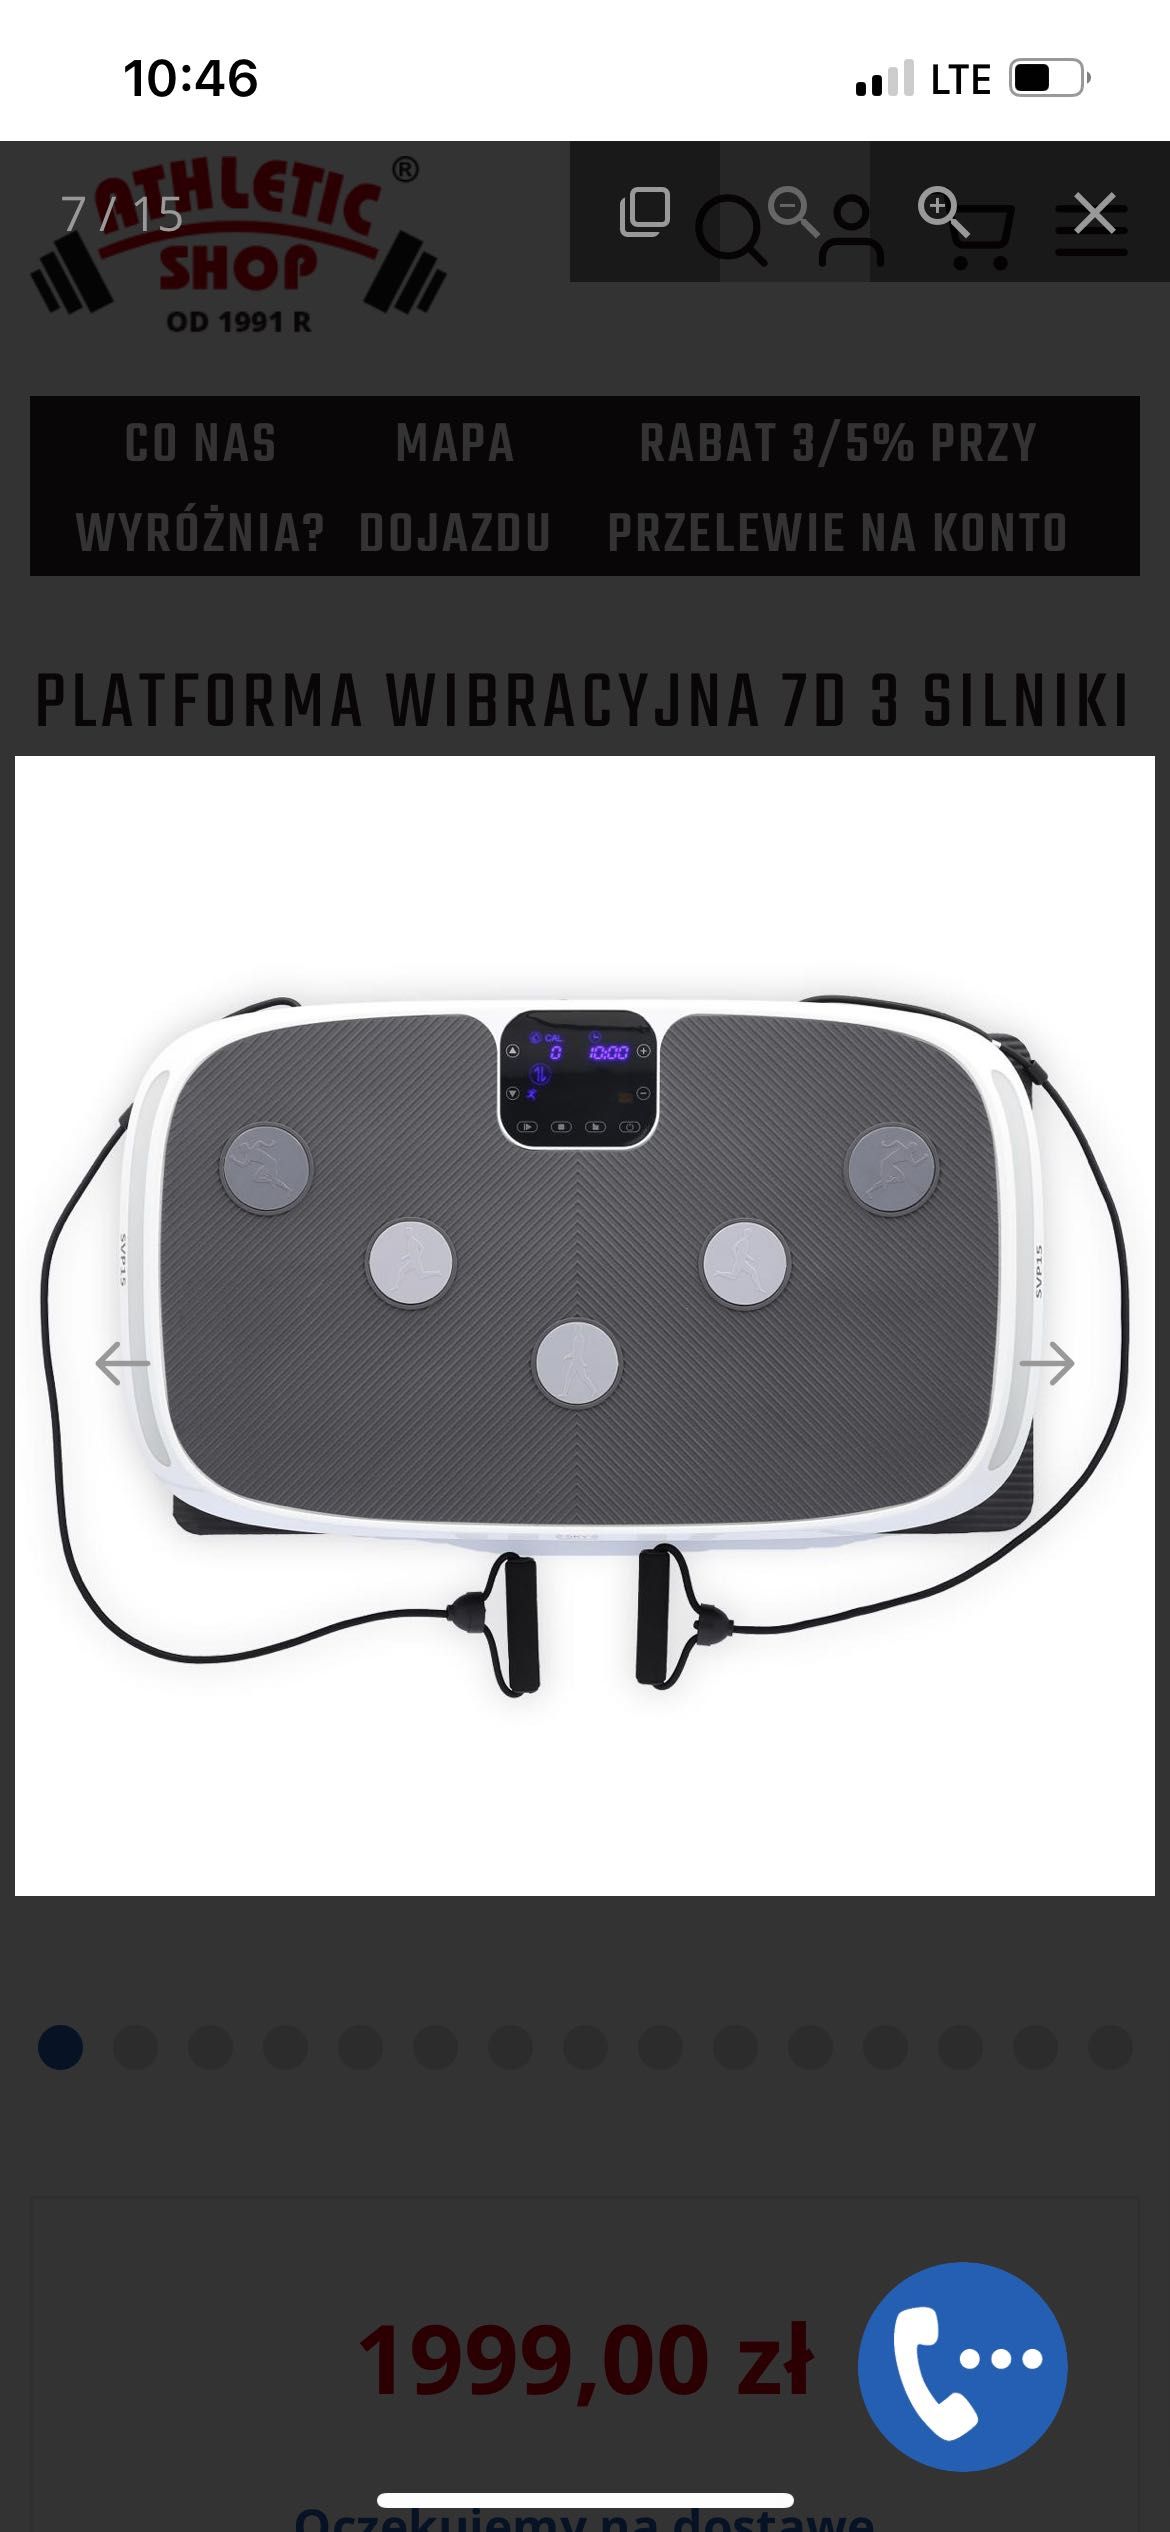 Nowa platforma wibracyjna SVP15